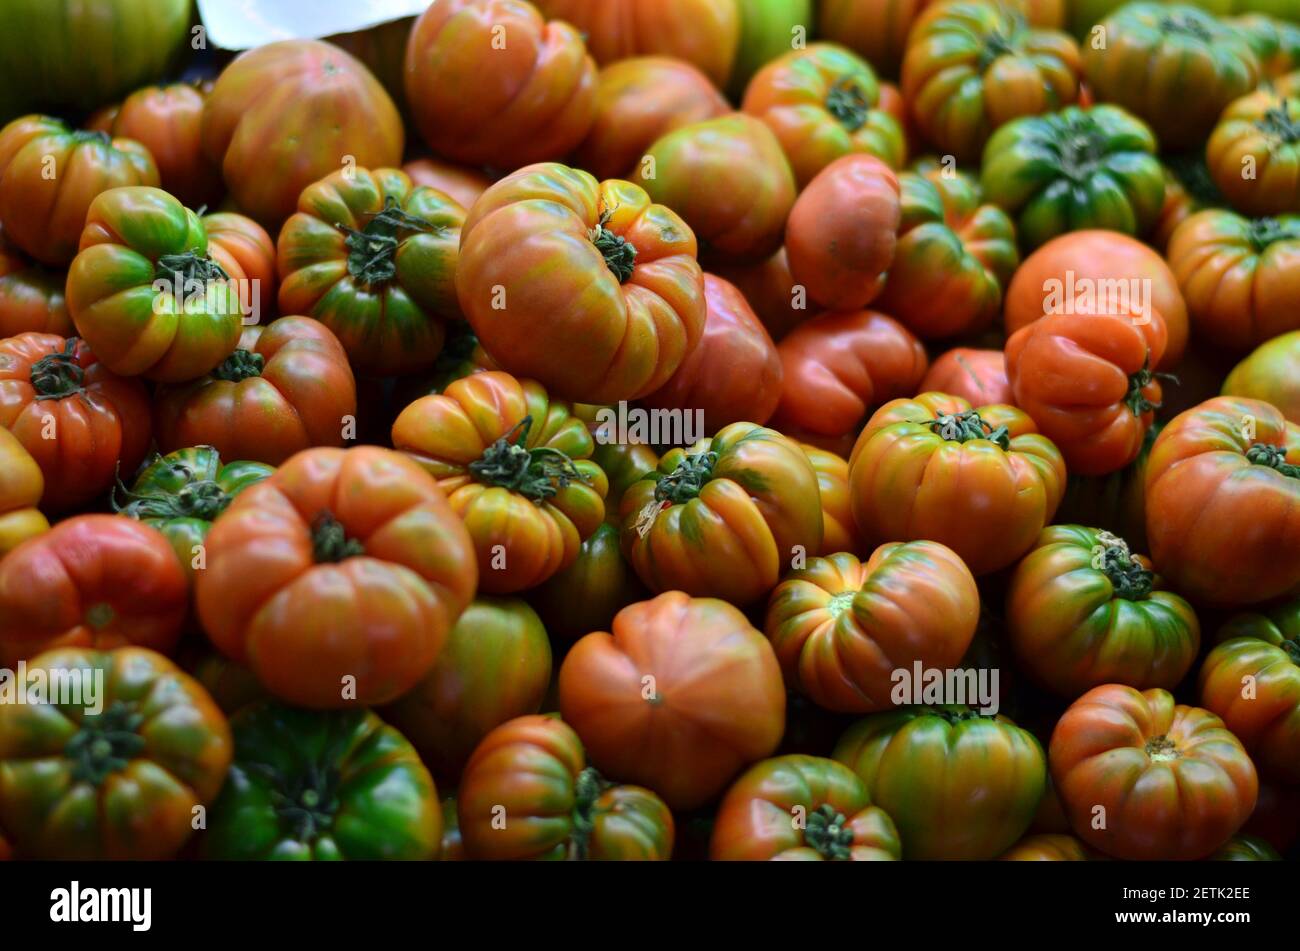 Pomodori freschi rossi e verdi, appena raccolti dall'orto, pronti per la vendita al mercato vegetale. Foto Stock